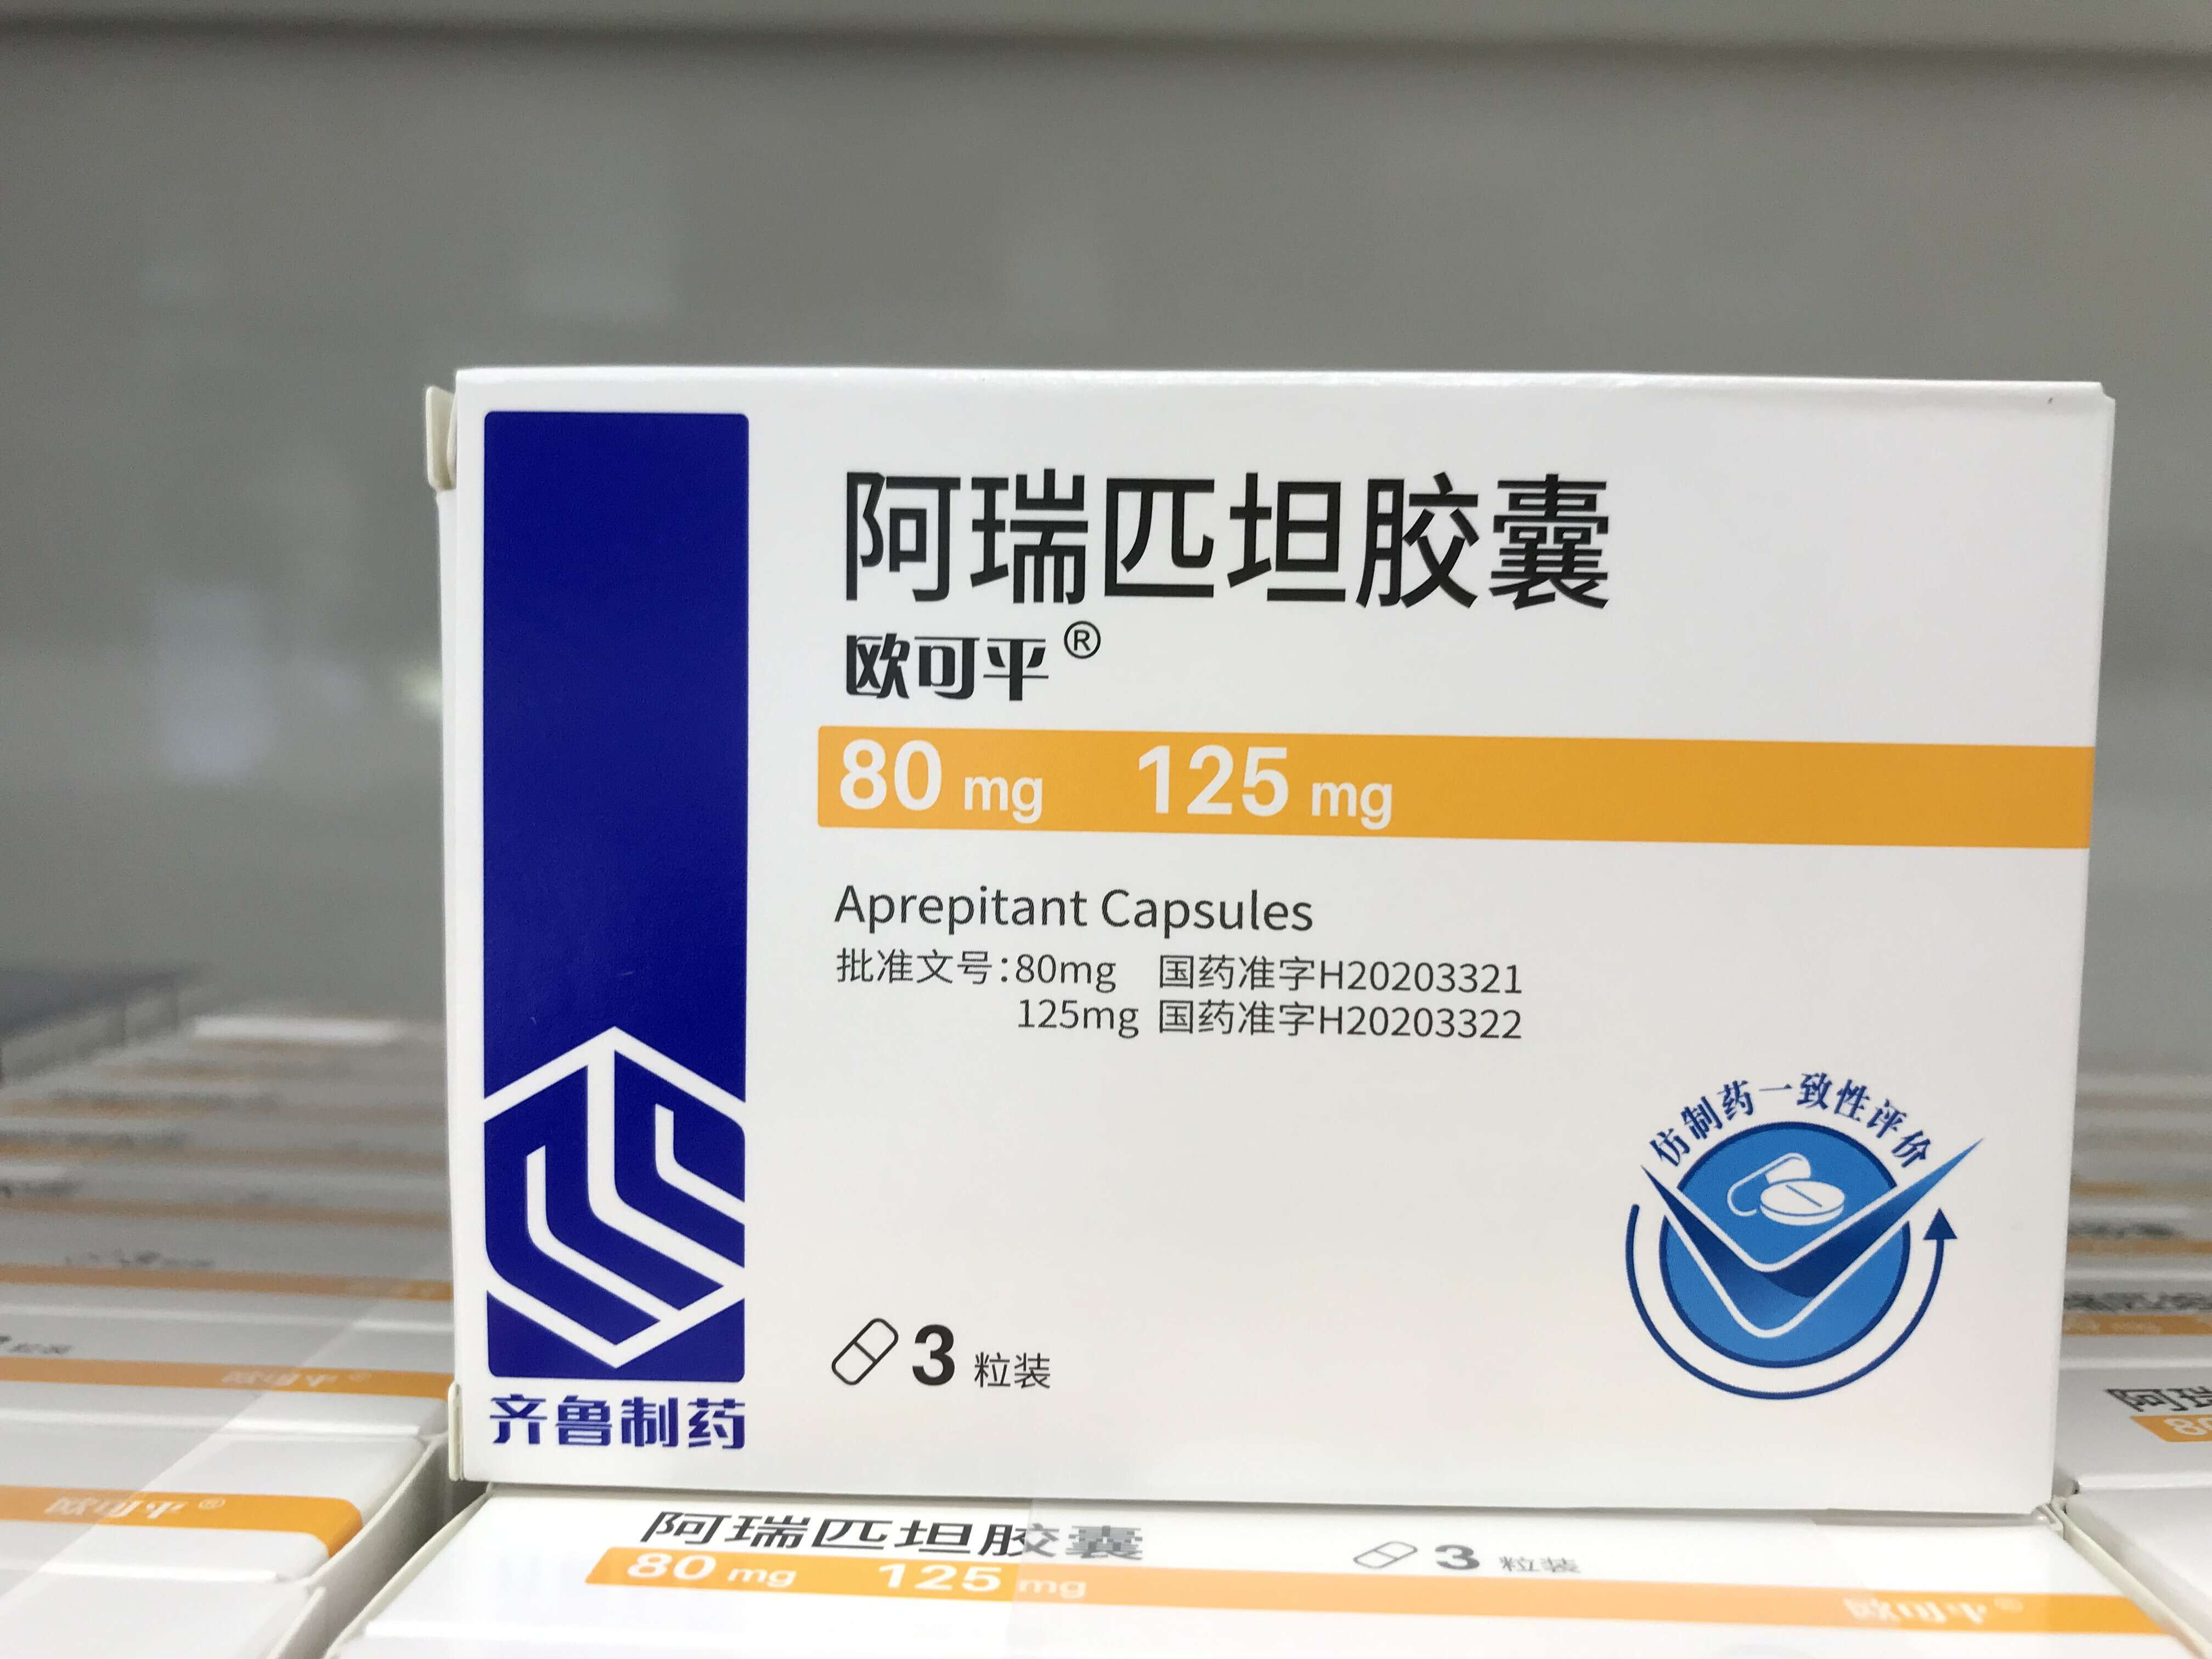 肿瘤化疗止吐药阿瑞匹坦胶囊国内首个仿制药上市